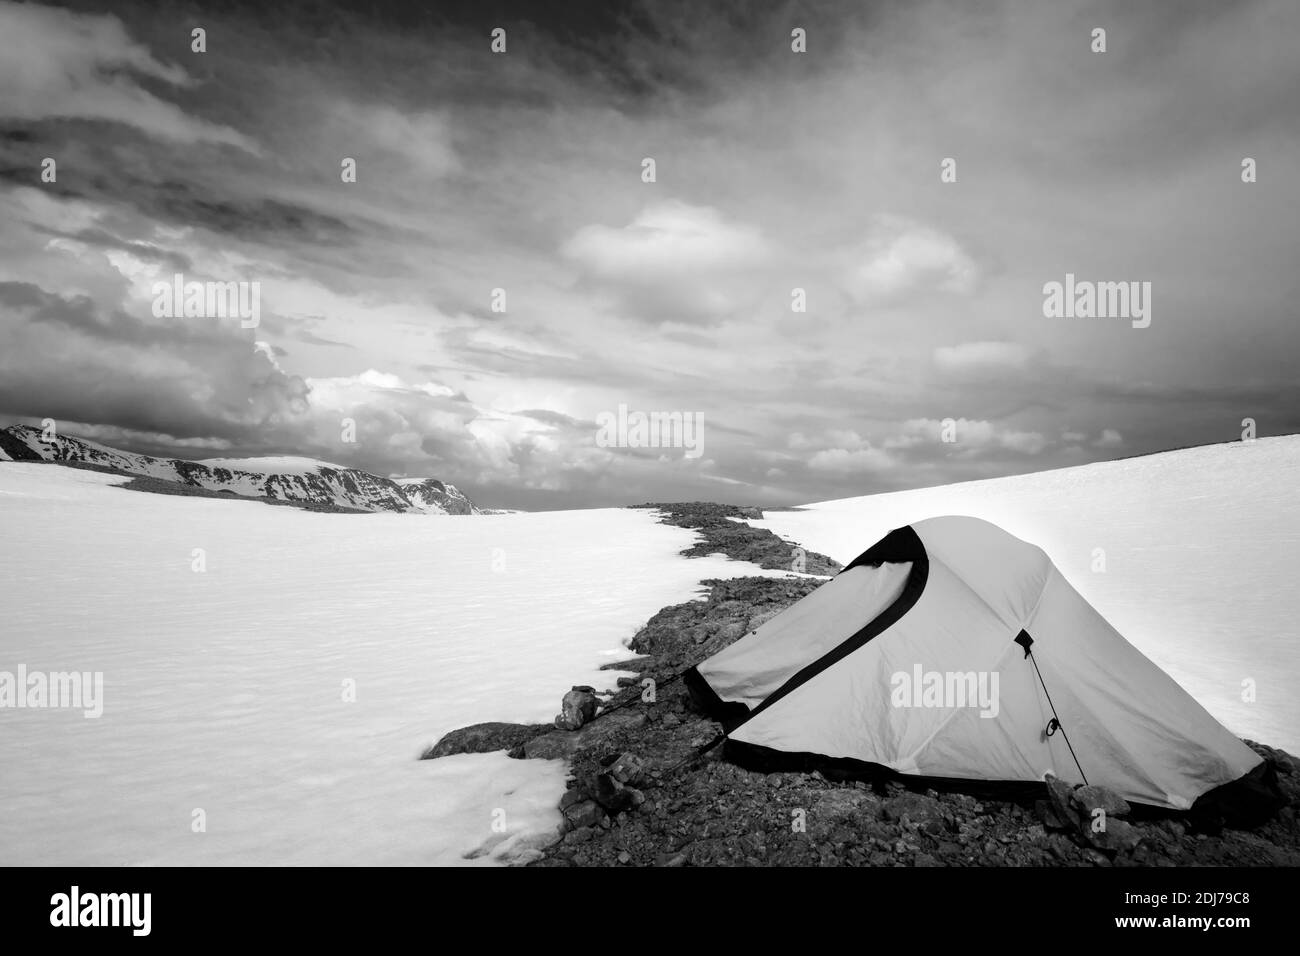 Tente d'escalade dans les hautes montagnes enneigées. Turquie, montagnes du Taurus central, Aladaglar (anti-Taurus), plateau Edigel (Yedi Goller). Tons noir et blanc Banque D'Images